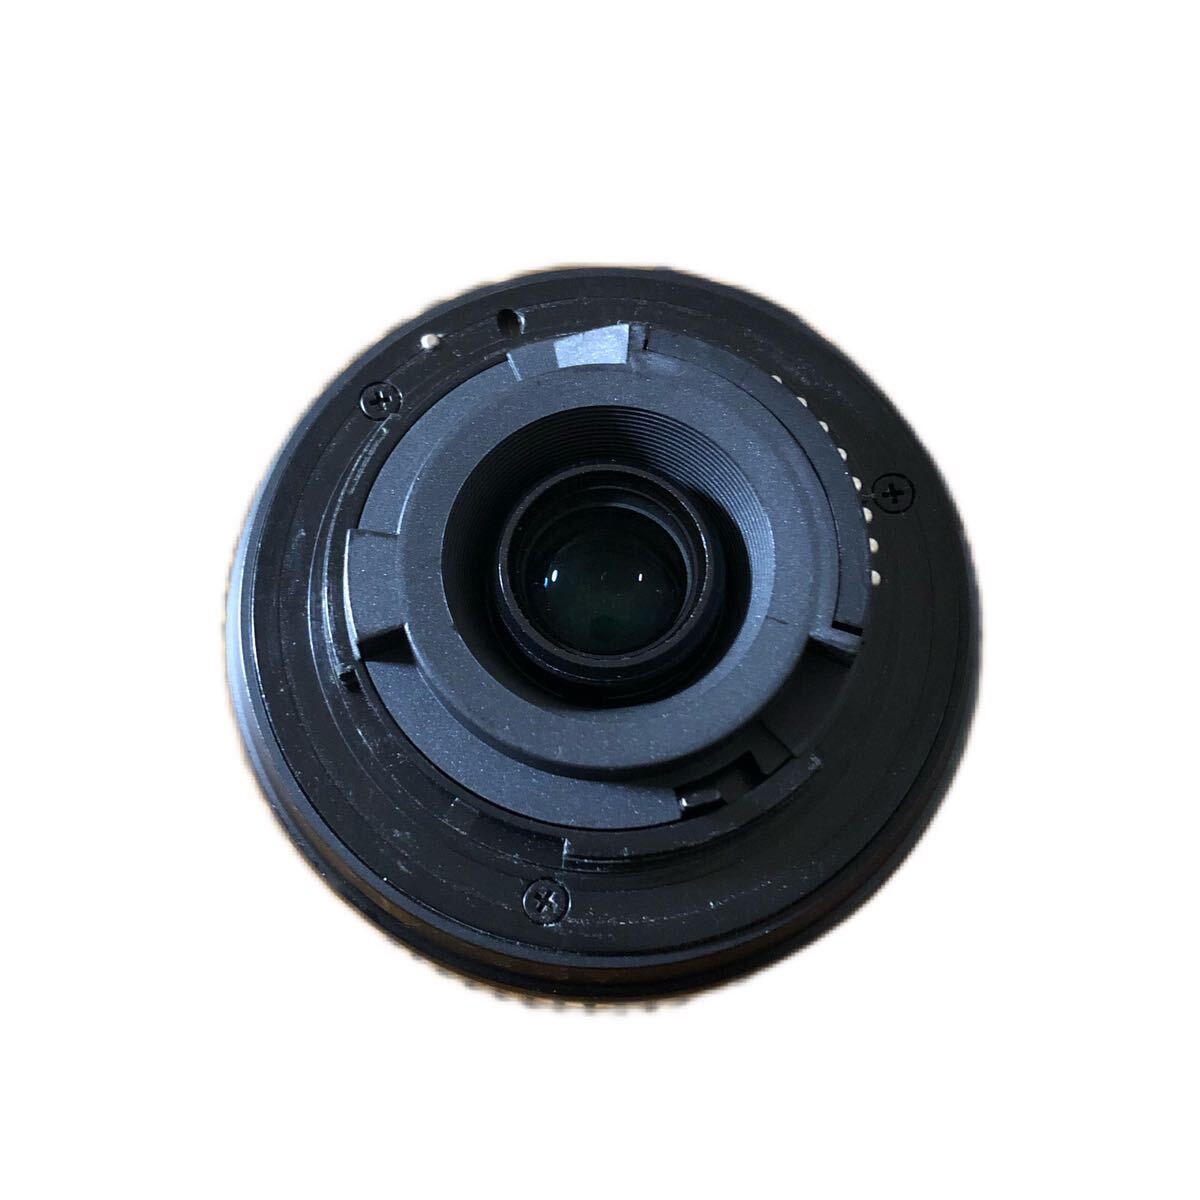 NIKON DX AF-S NIKKOR 55-200mm 1.4-5.6G ED 望遠レンズ 撮影 ニコン カメラ周辺機器_画像2